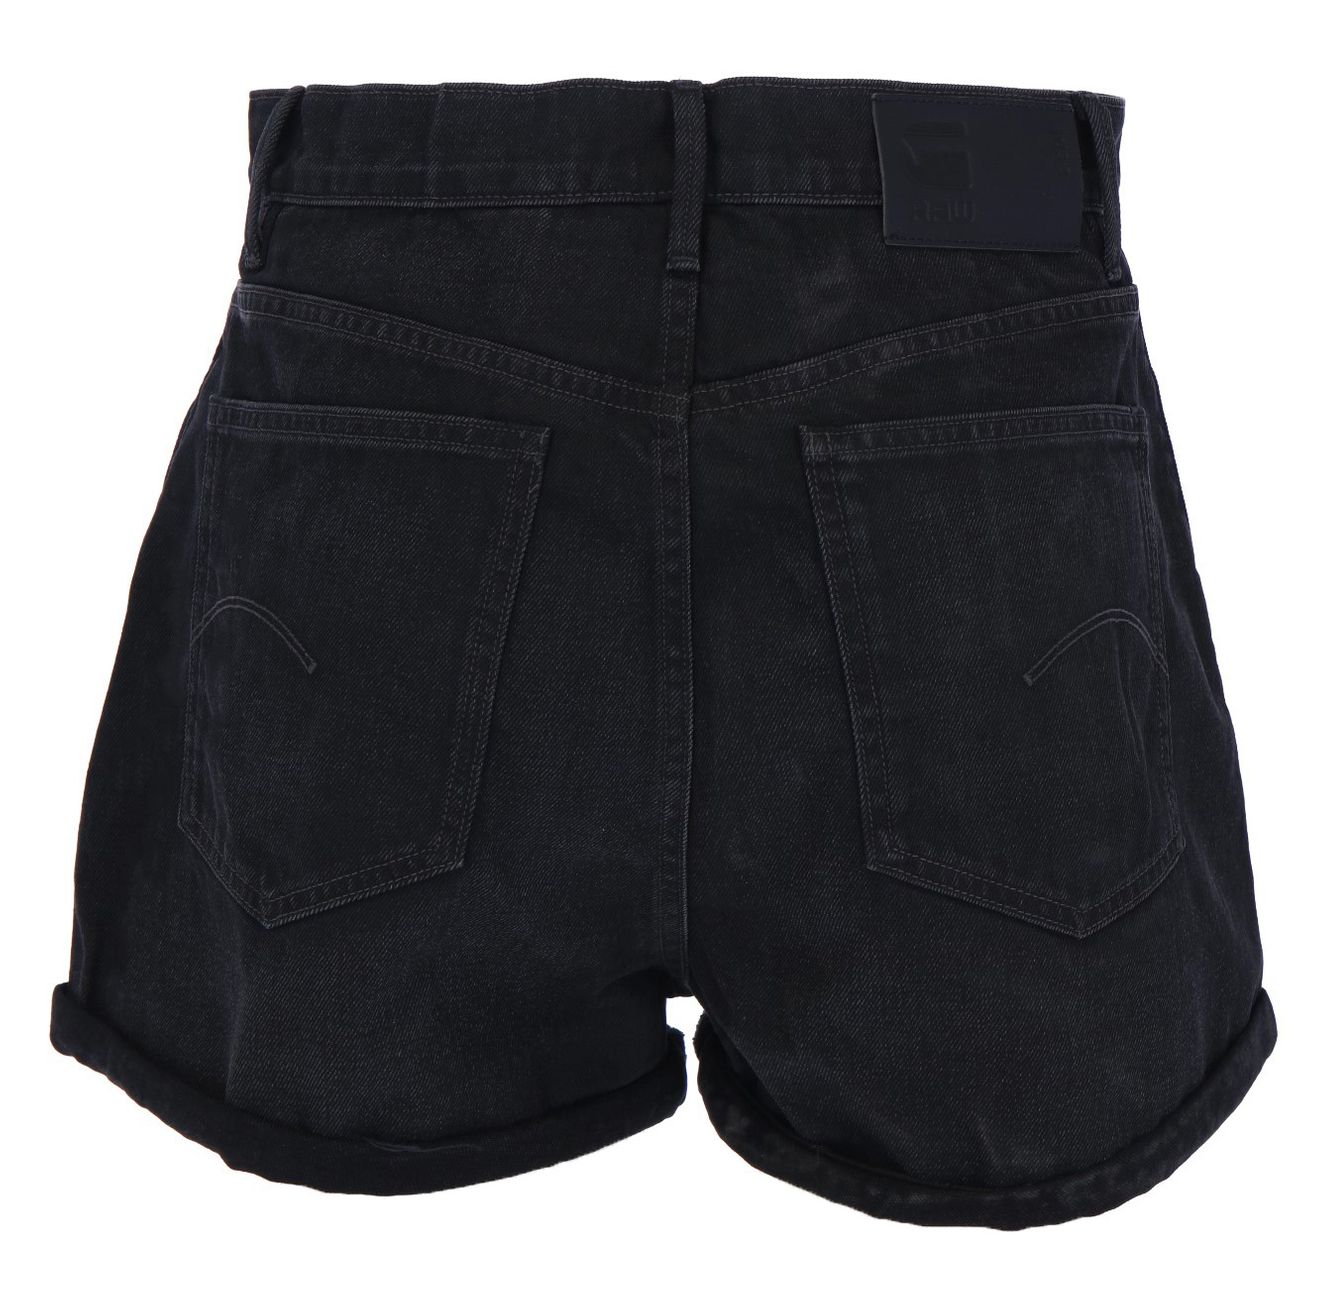 G-STAR RAW DENIM TEDIE SHORT worn in black onyx Damen Shorts - G-Star Raw Denim - SAGATOO - 8719772818455